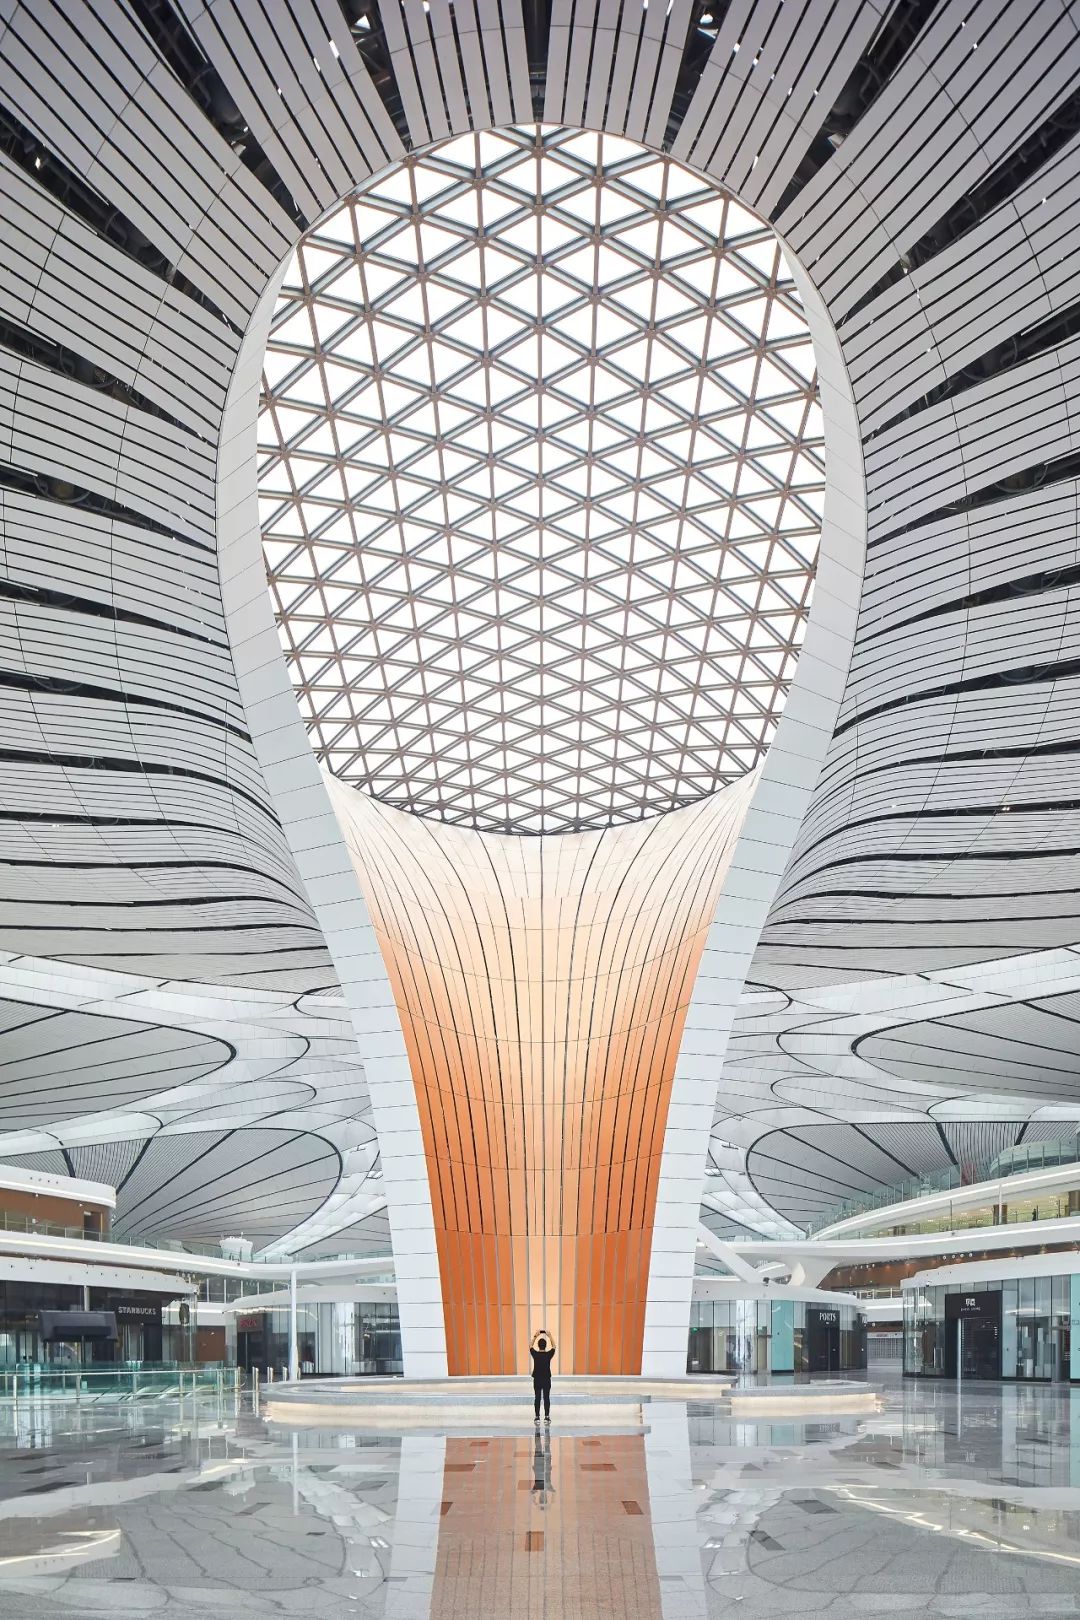 超魔幻的北京大兴国际机场,2019年6月30日完美竣工,前天2019年9月25日